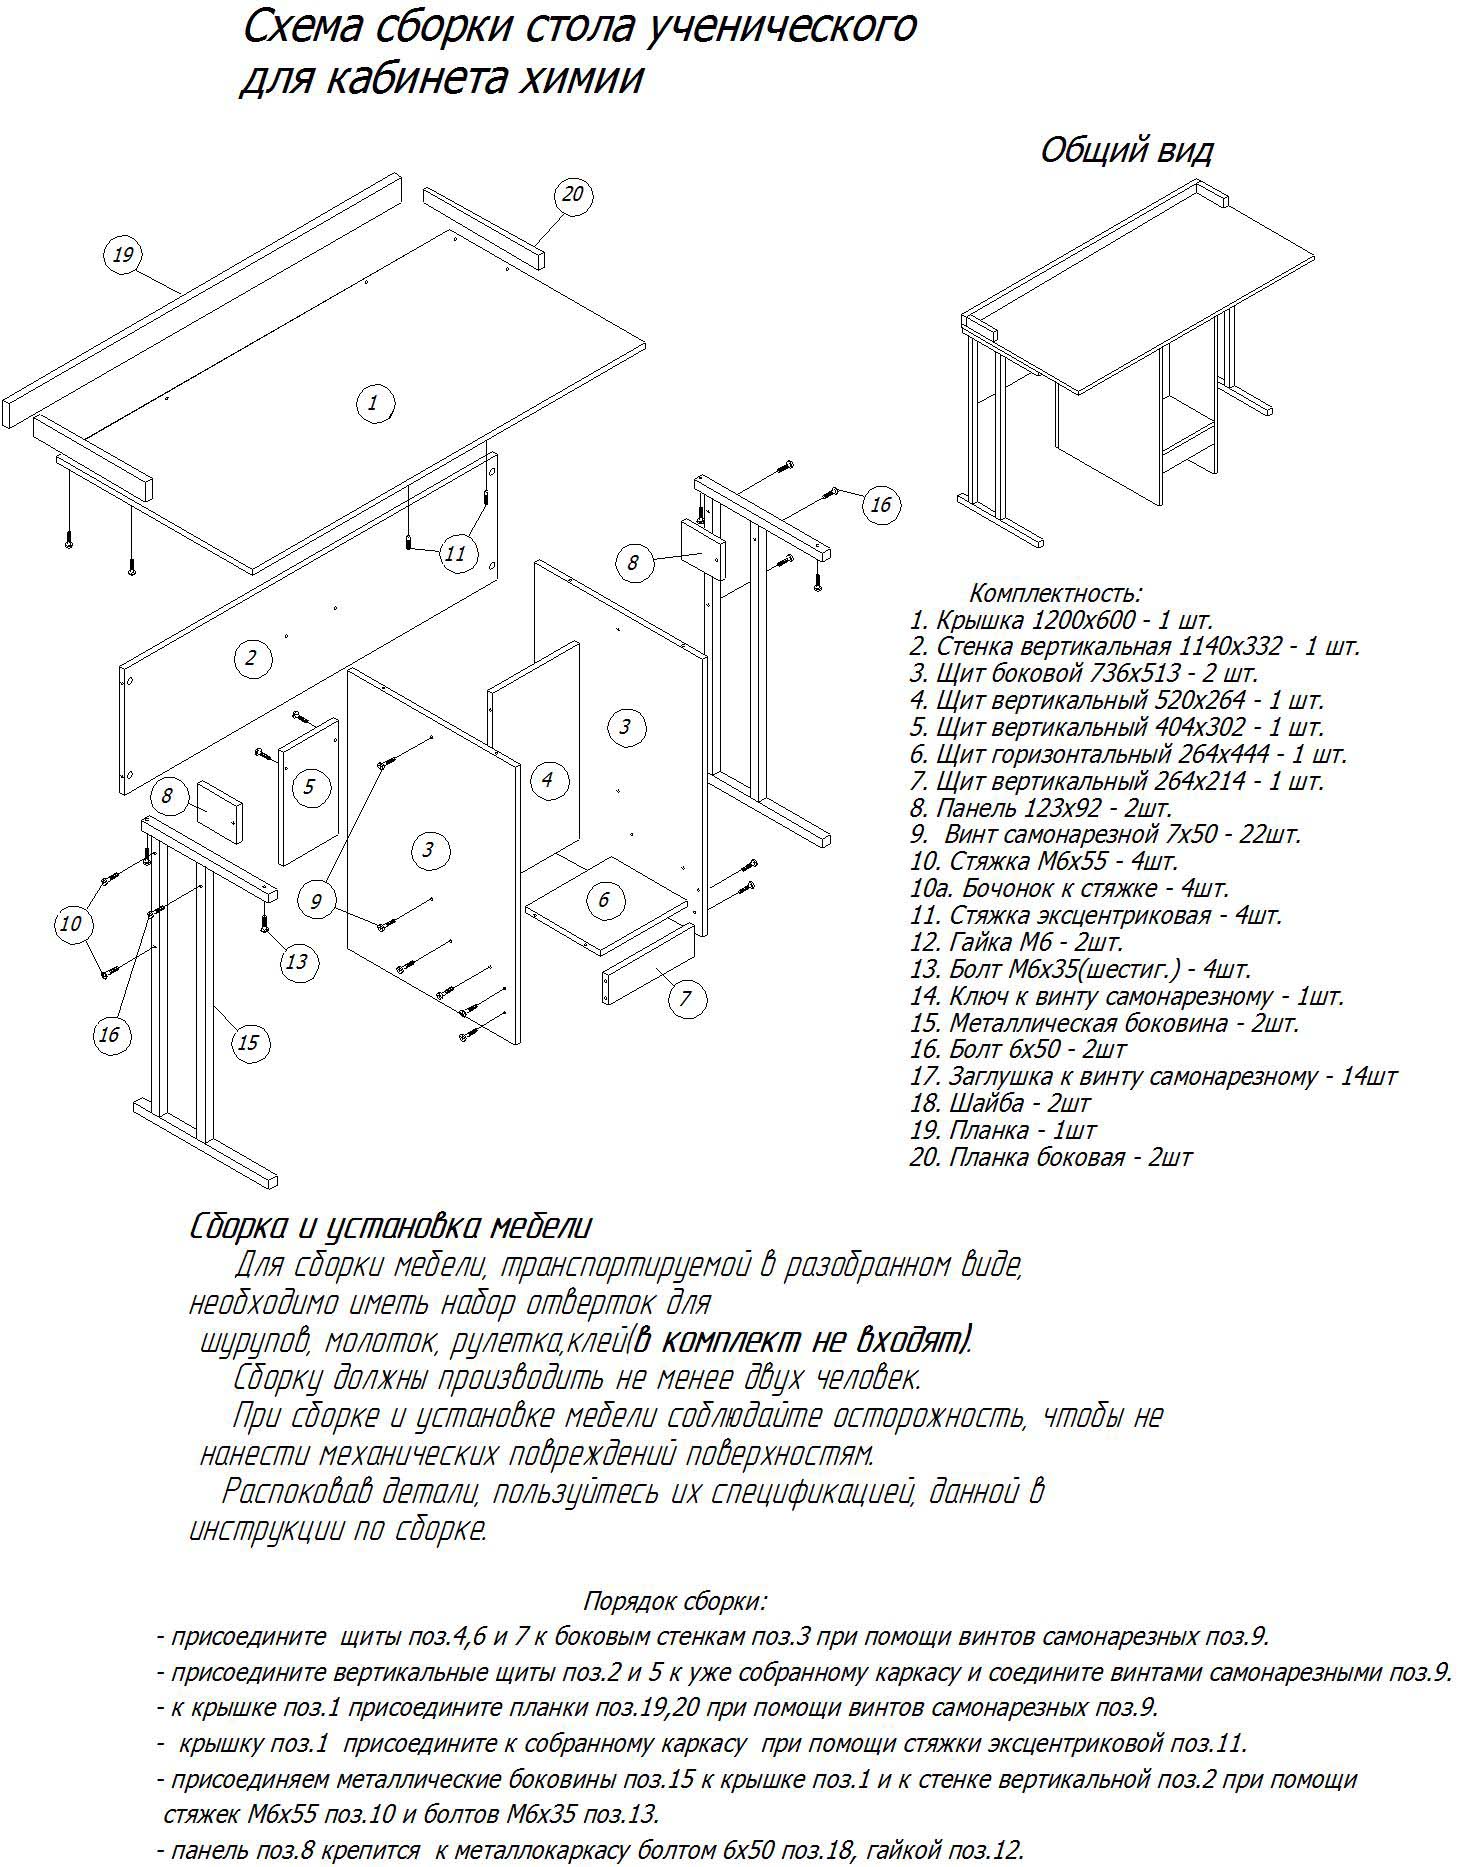 Схема сборки стол ПС 02 фабрика регион 058